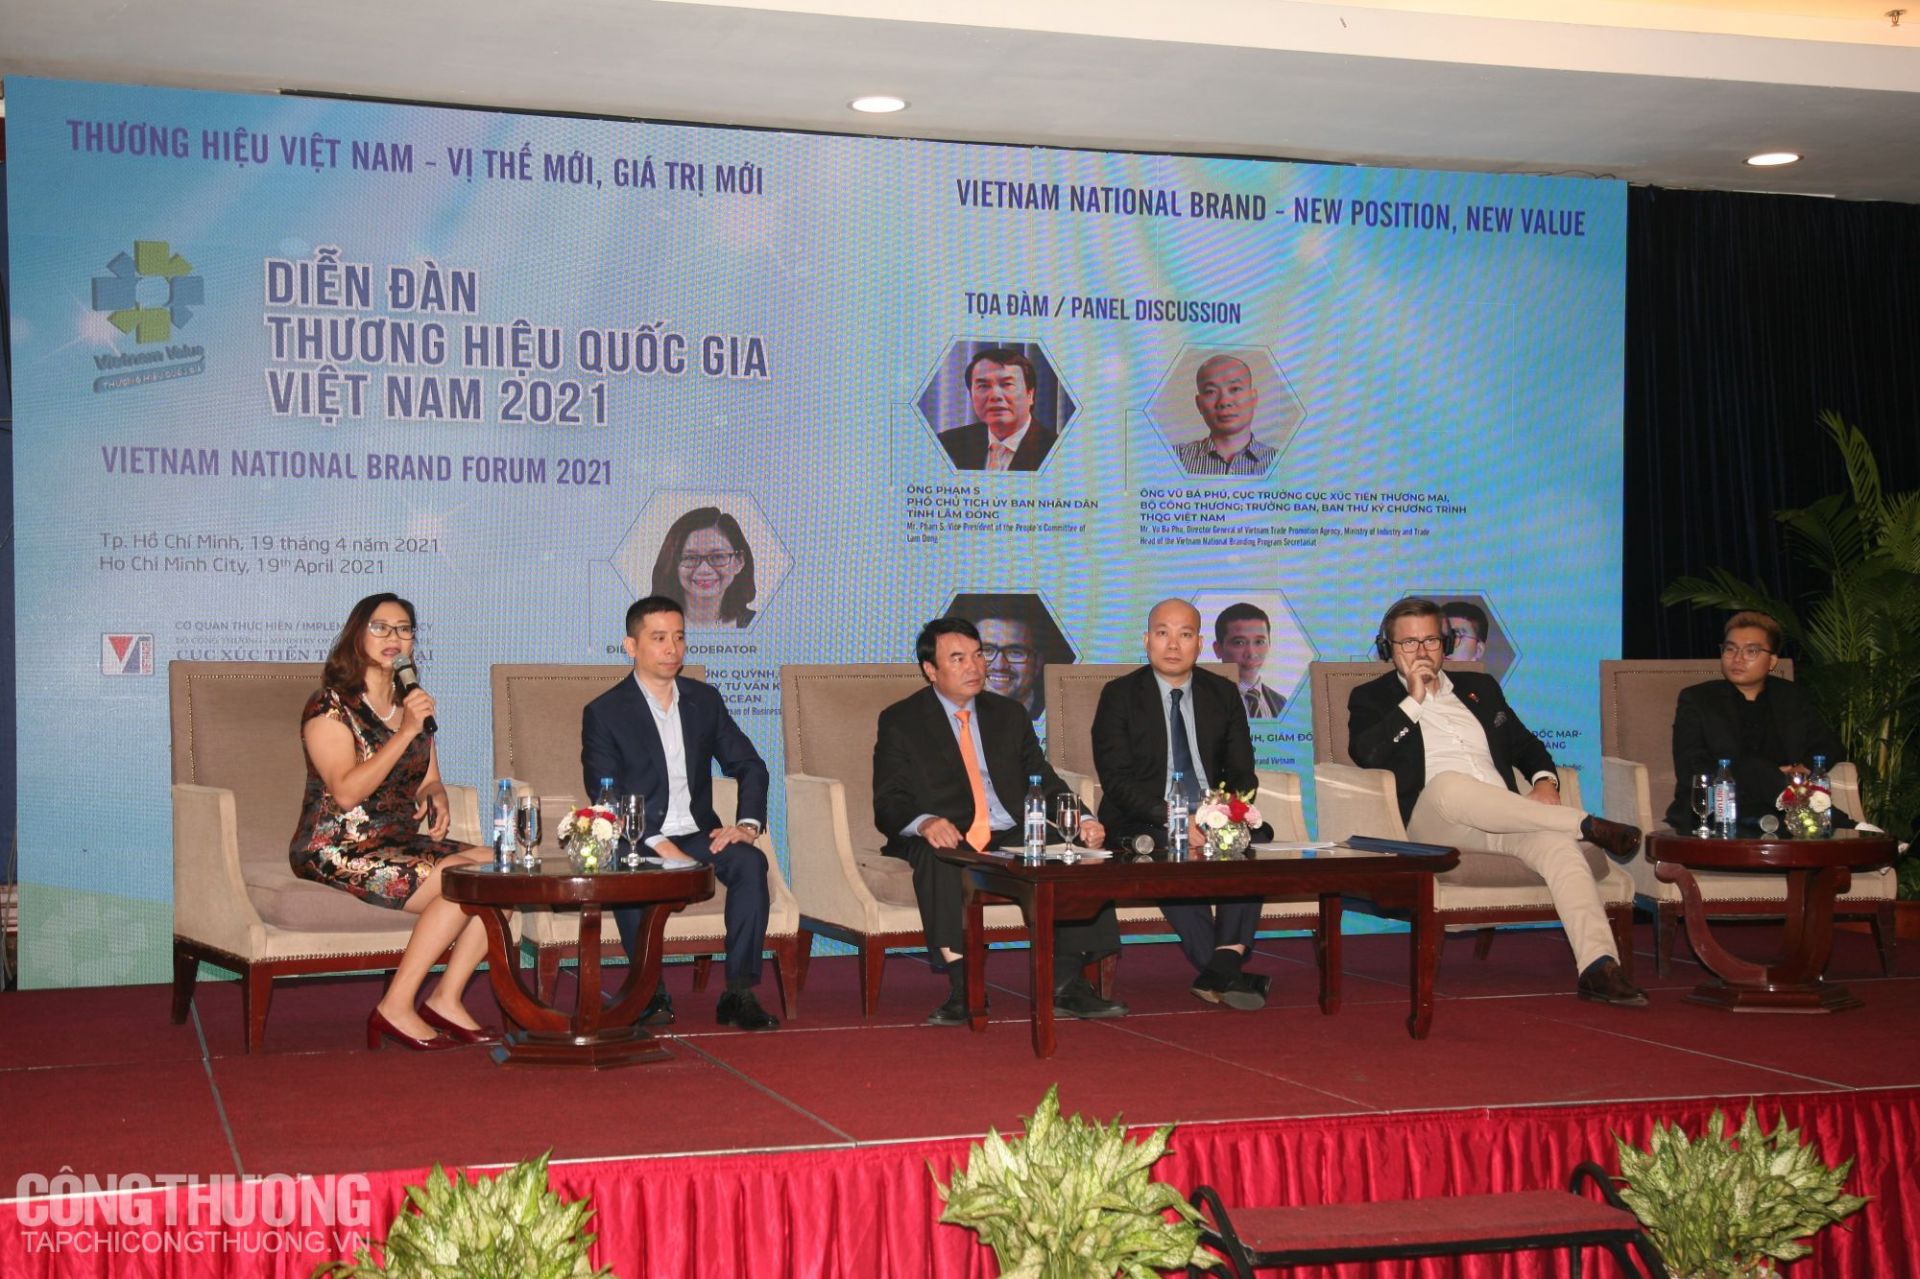 Diễn đàn Thương hiệu quốc gia Việt Nam 2021